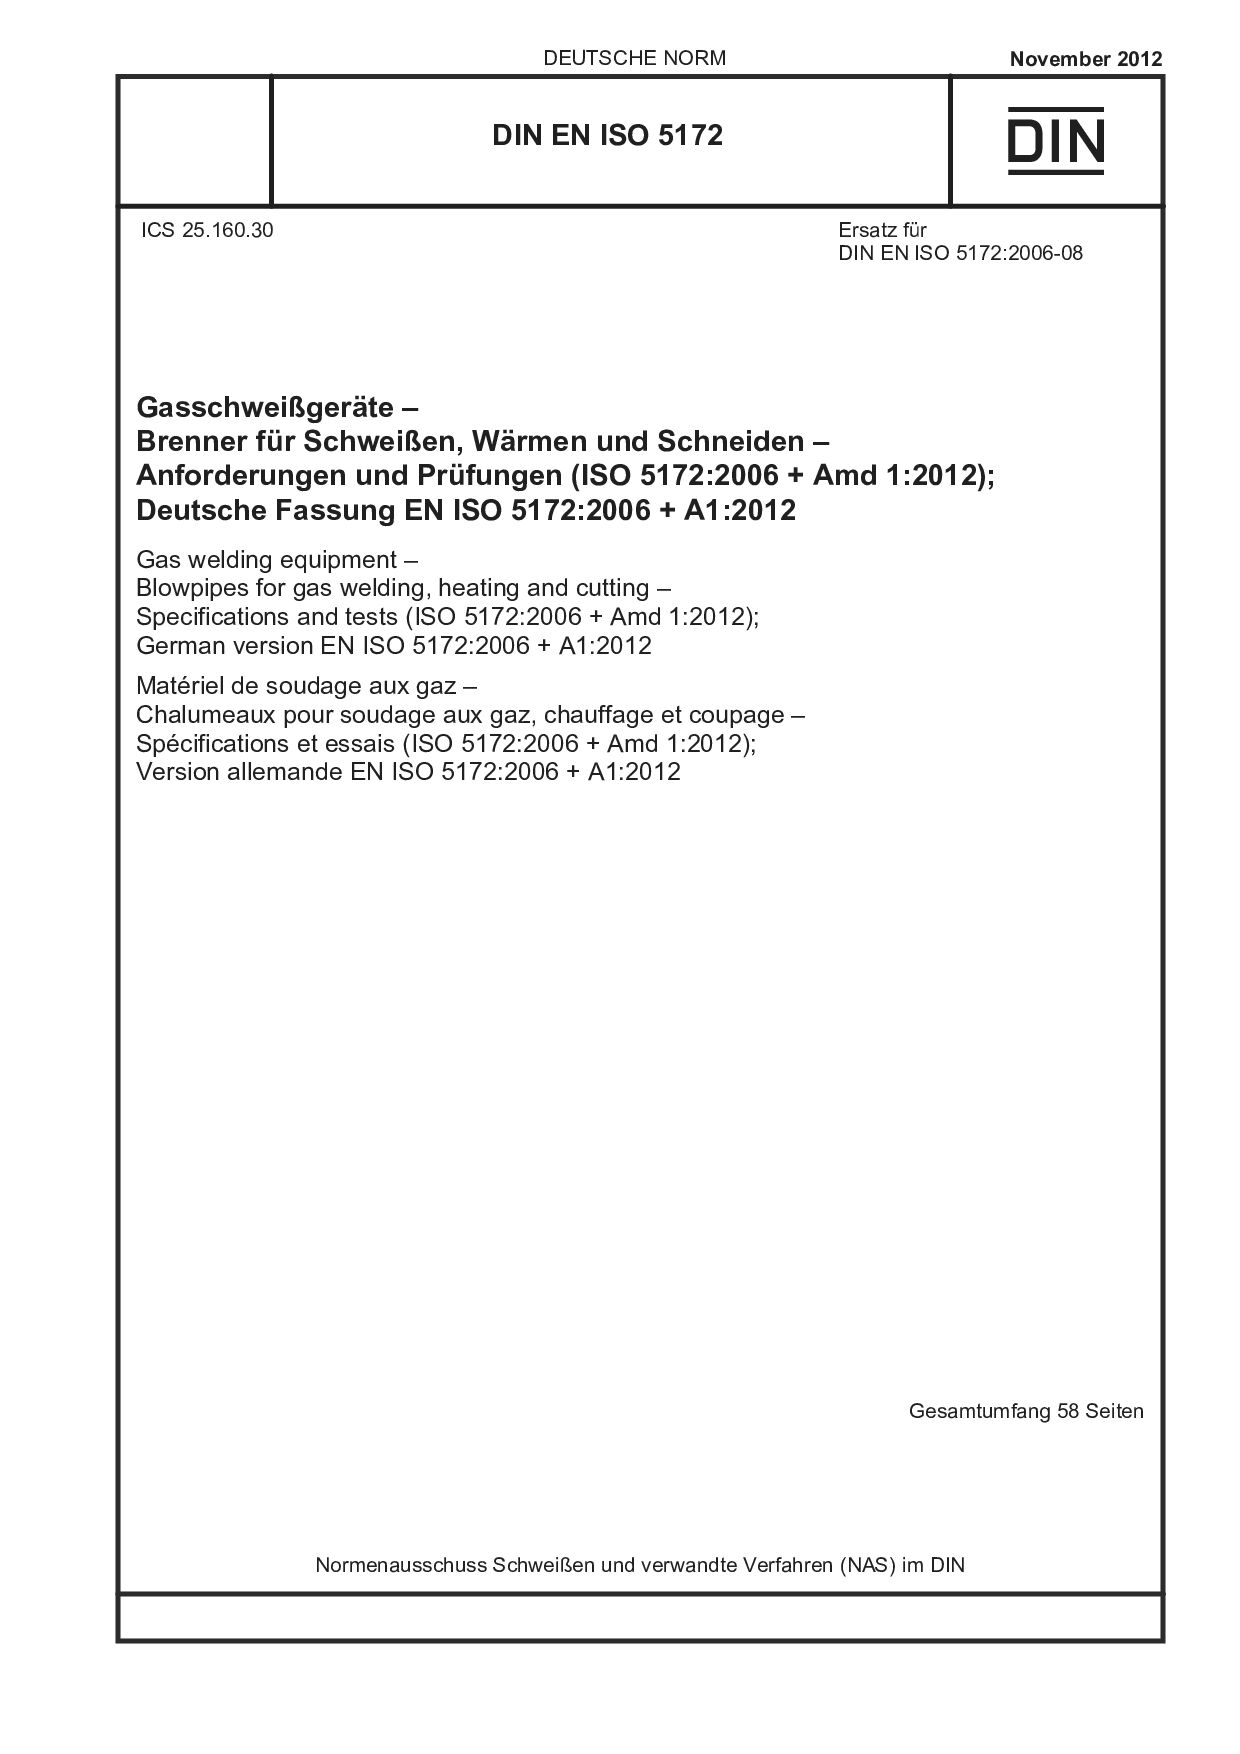 DIN EN ISO 5172:2012